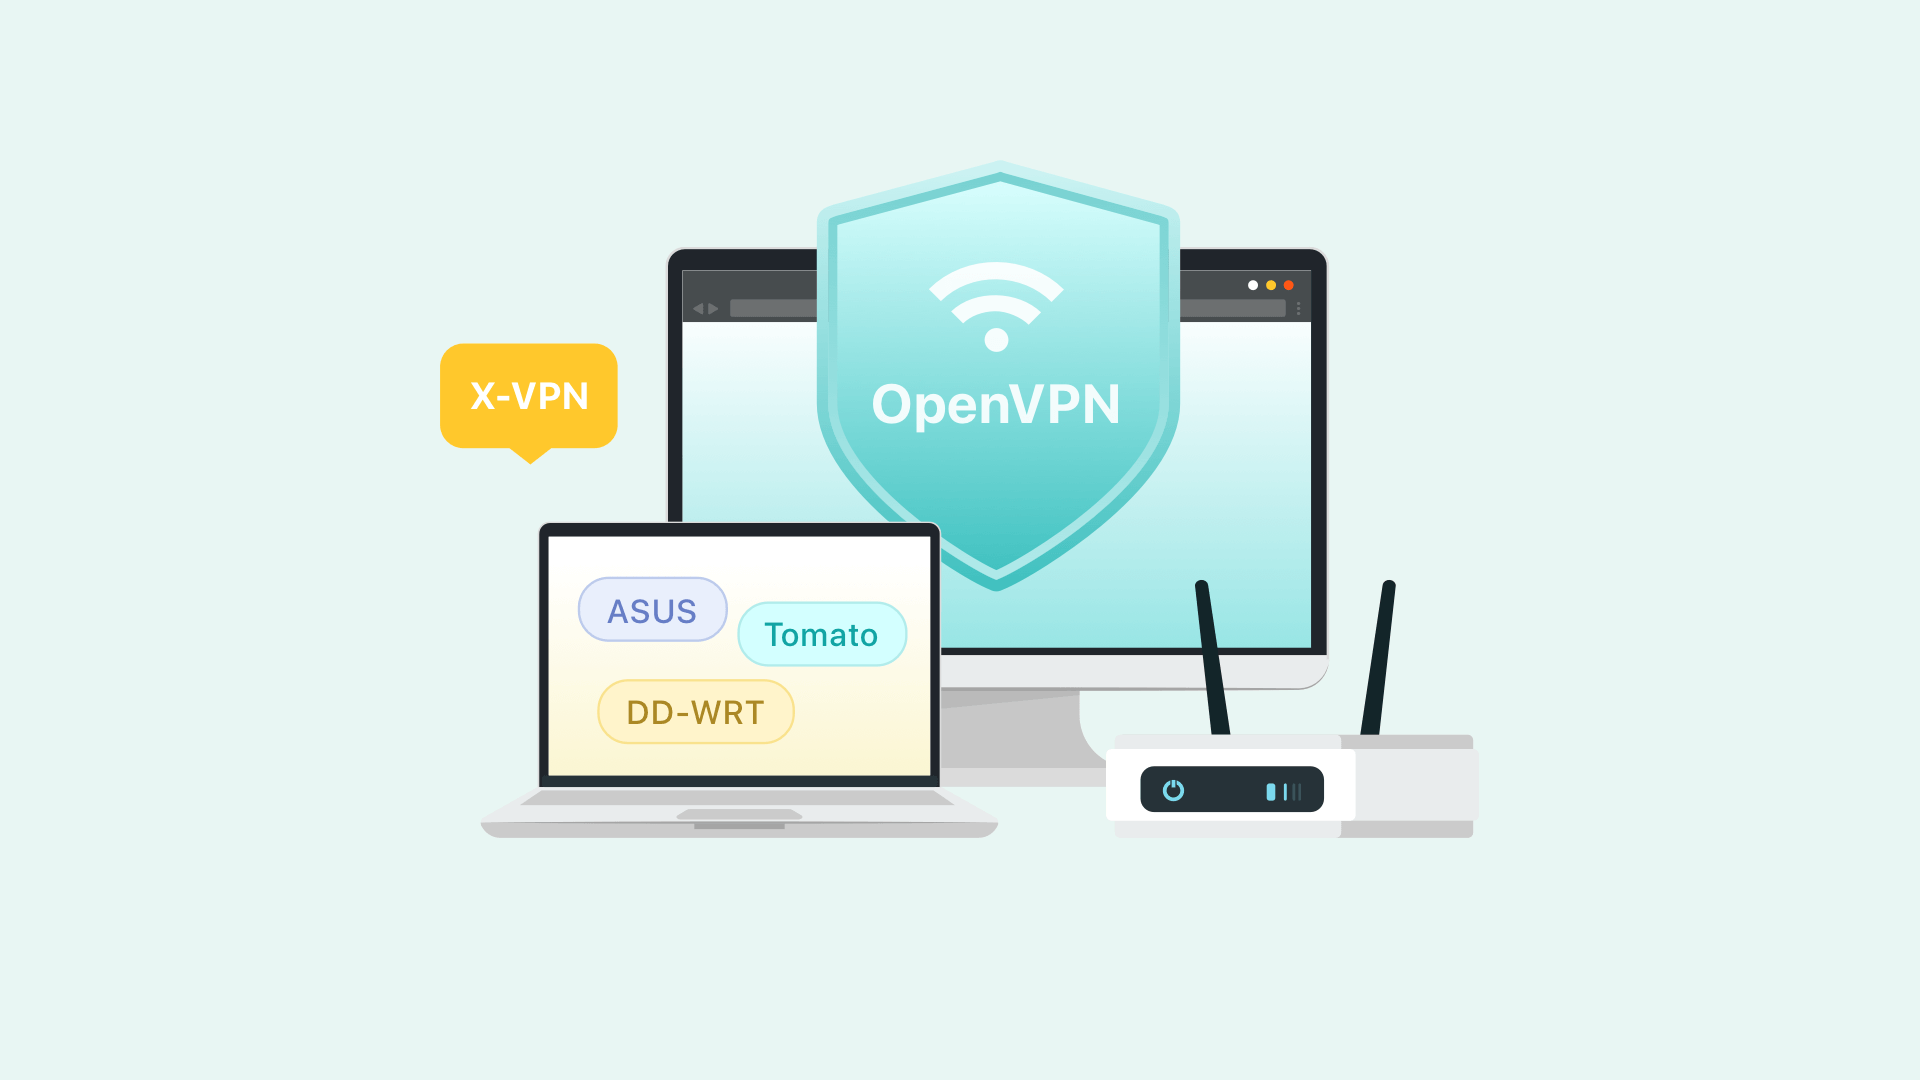 OpenVPN: Теперь интегрирован в список протоколов X-VPN